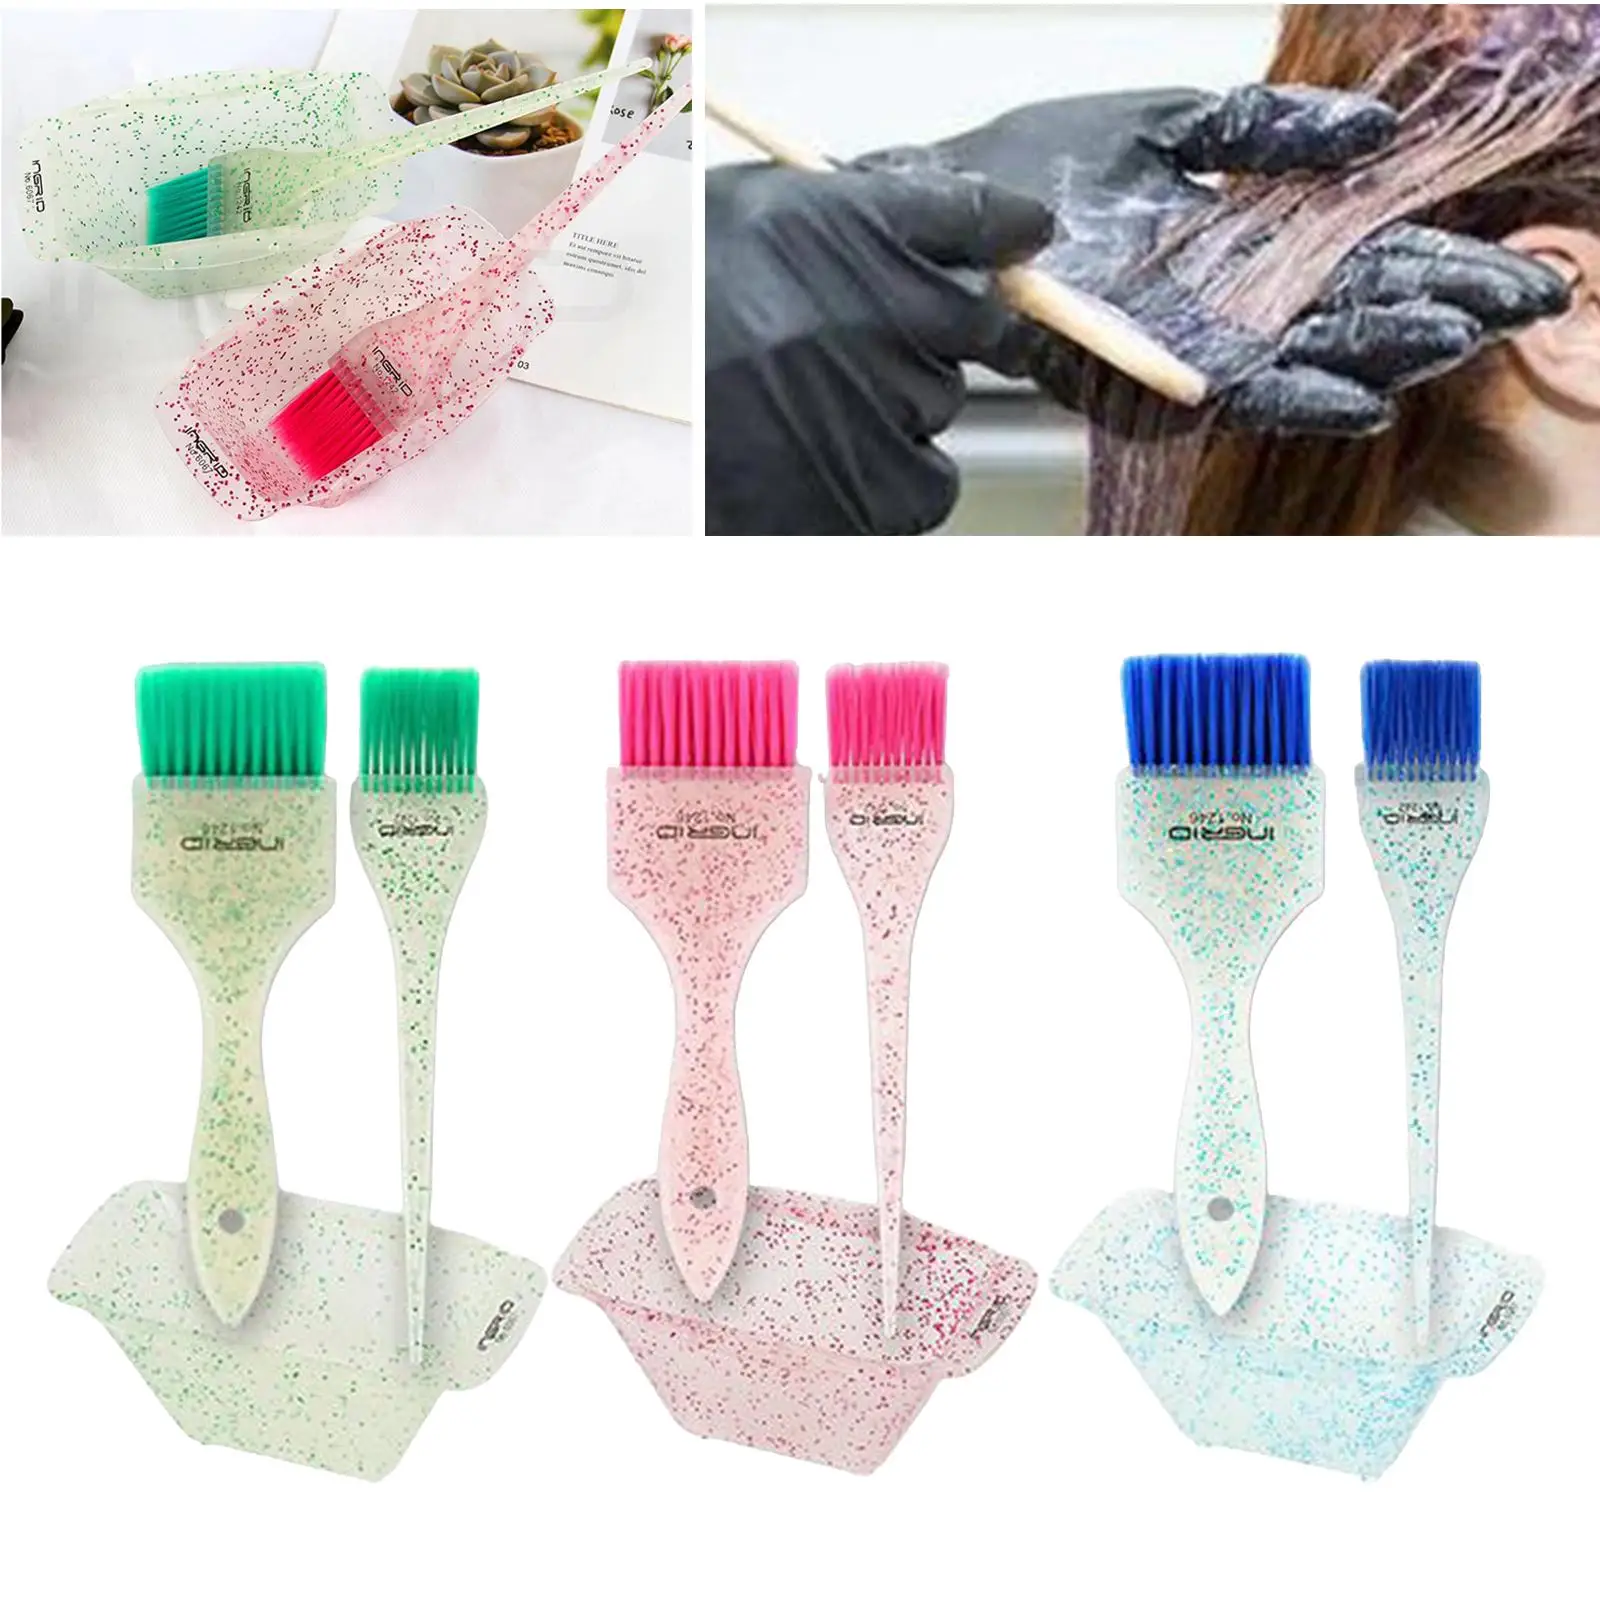 3 Piece Plastic Hair Dye Brush Bowl Hair Coloring Bowl Hair Dyeing Kit